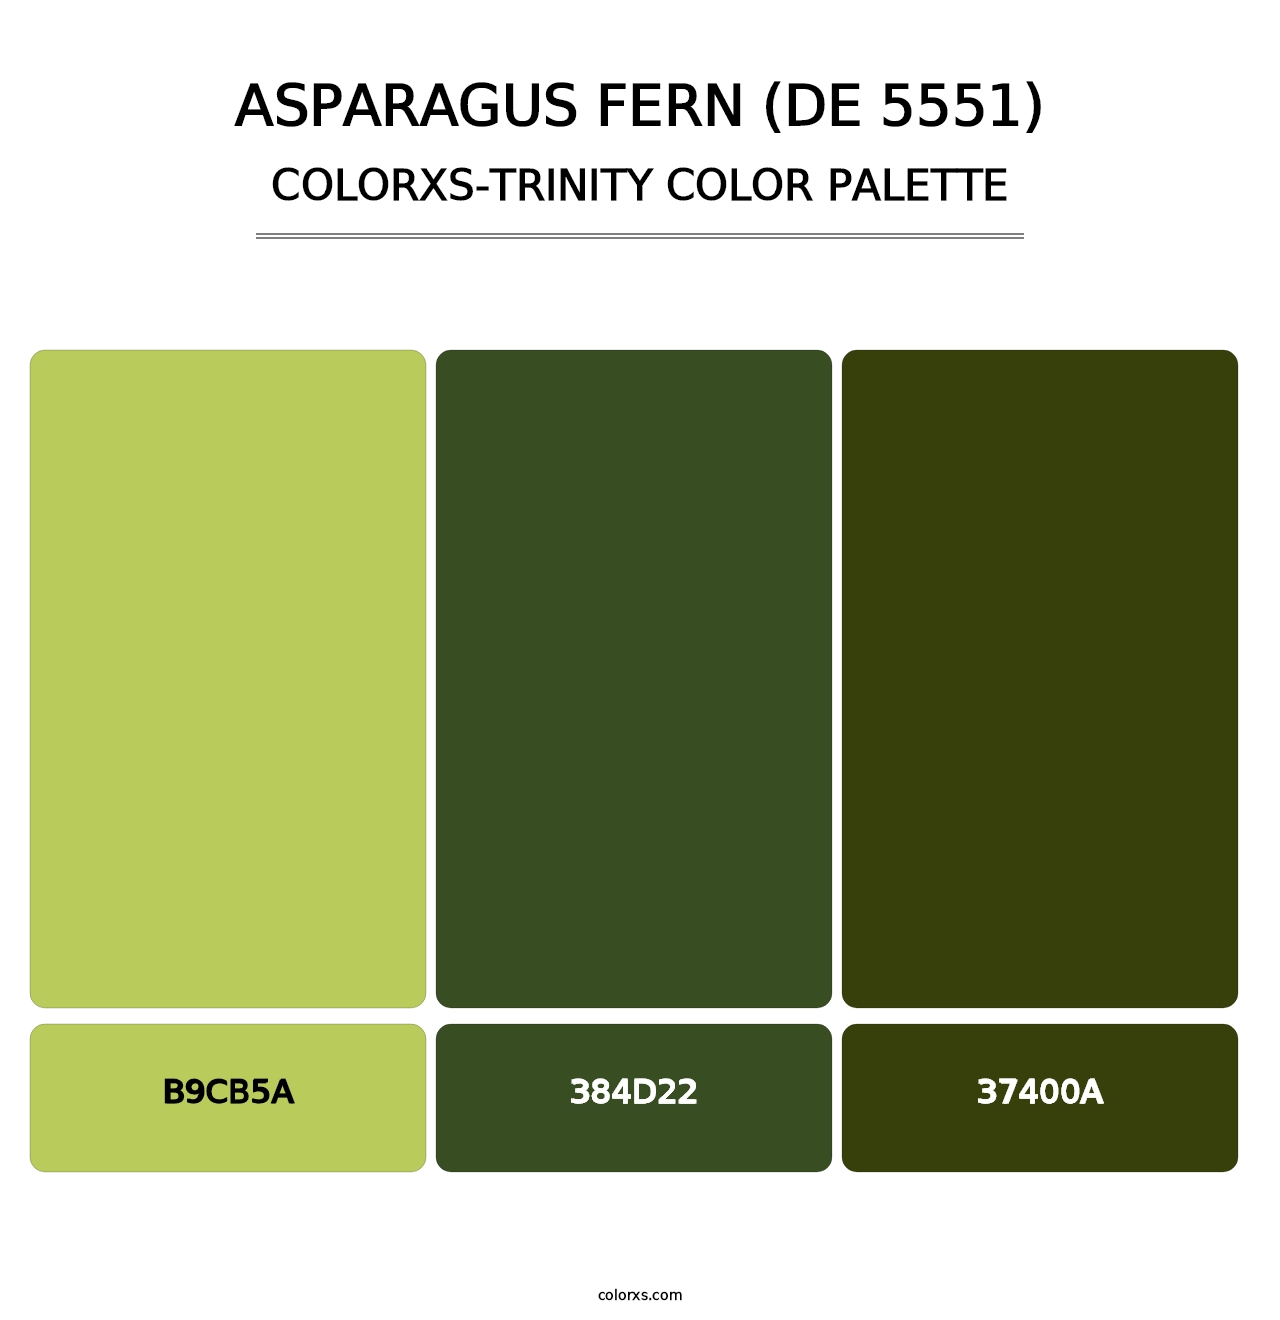 Asparagus Fern (DE 5551) - Colorxs Trinity Palette